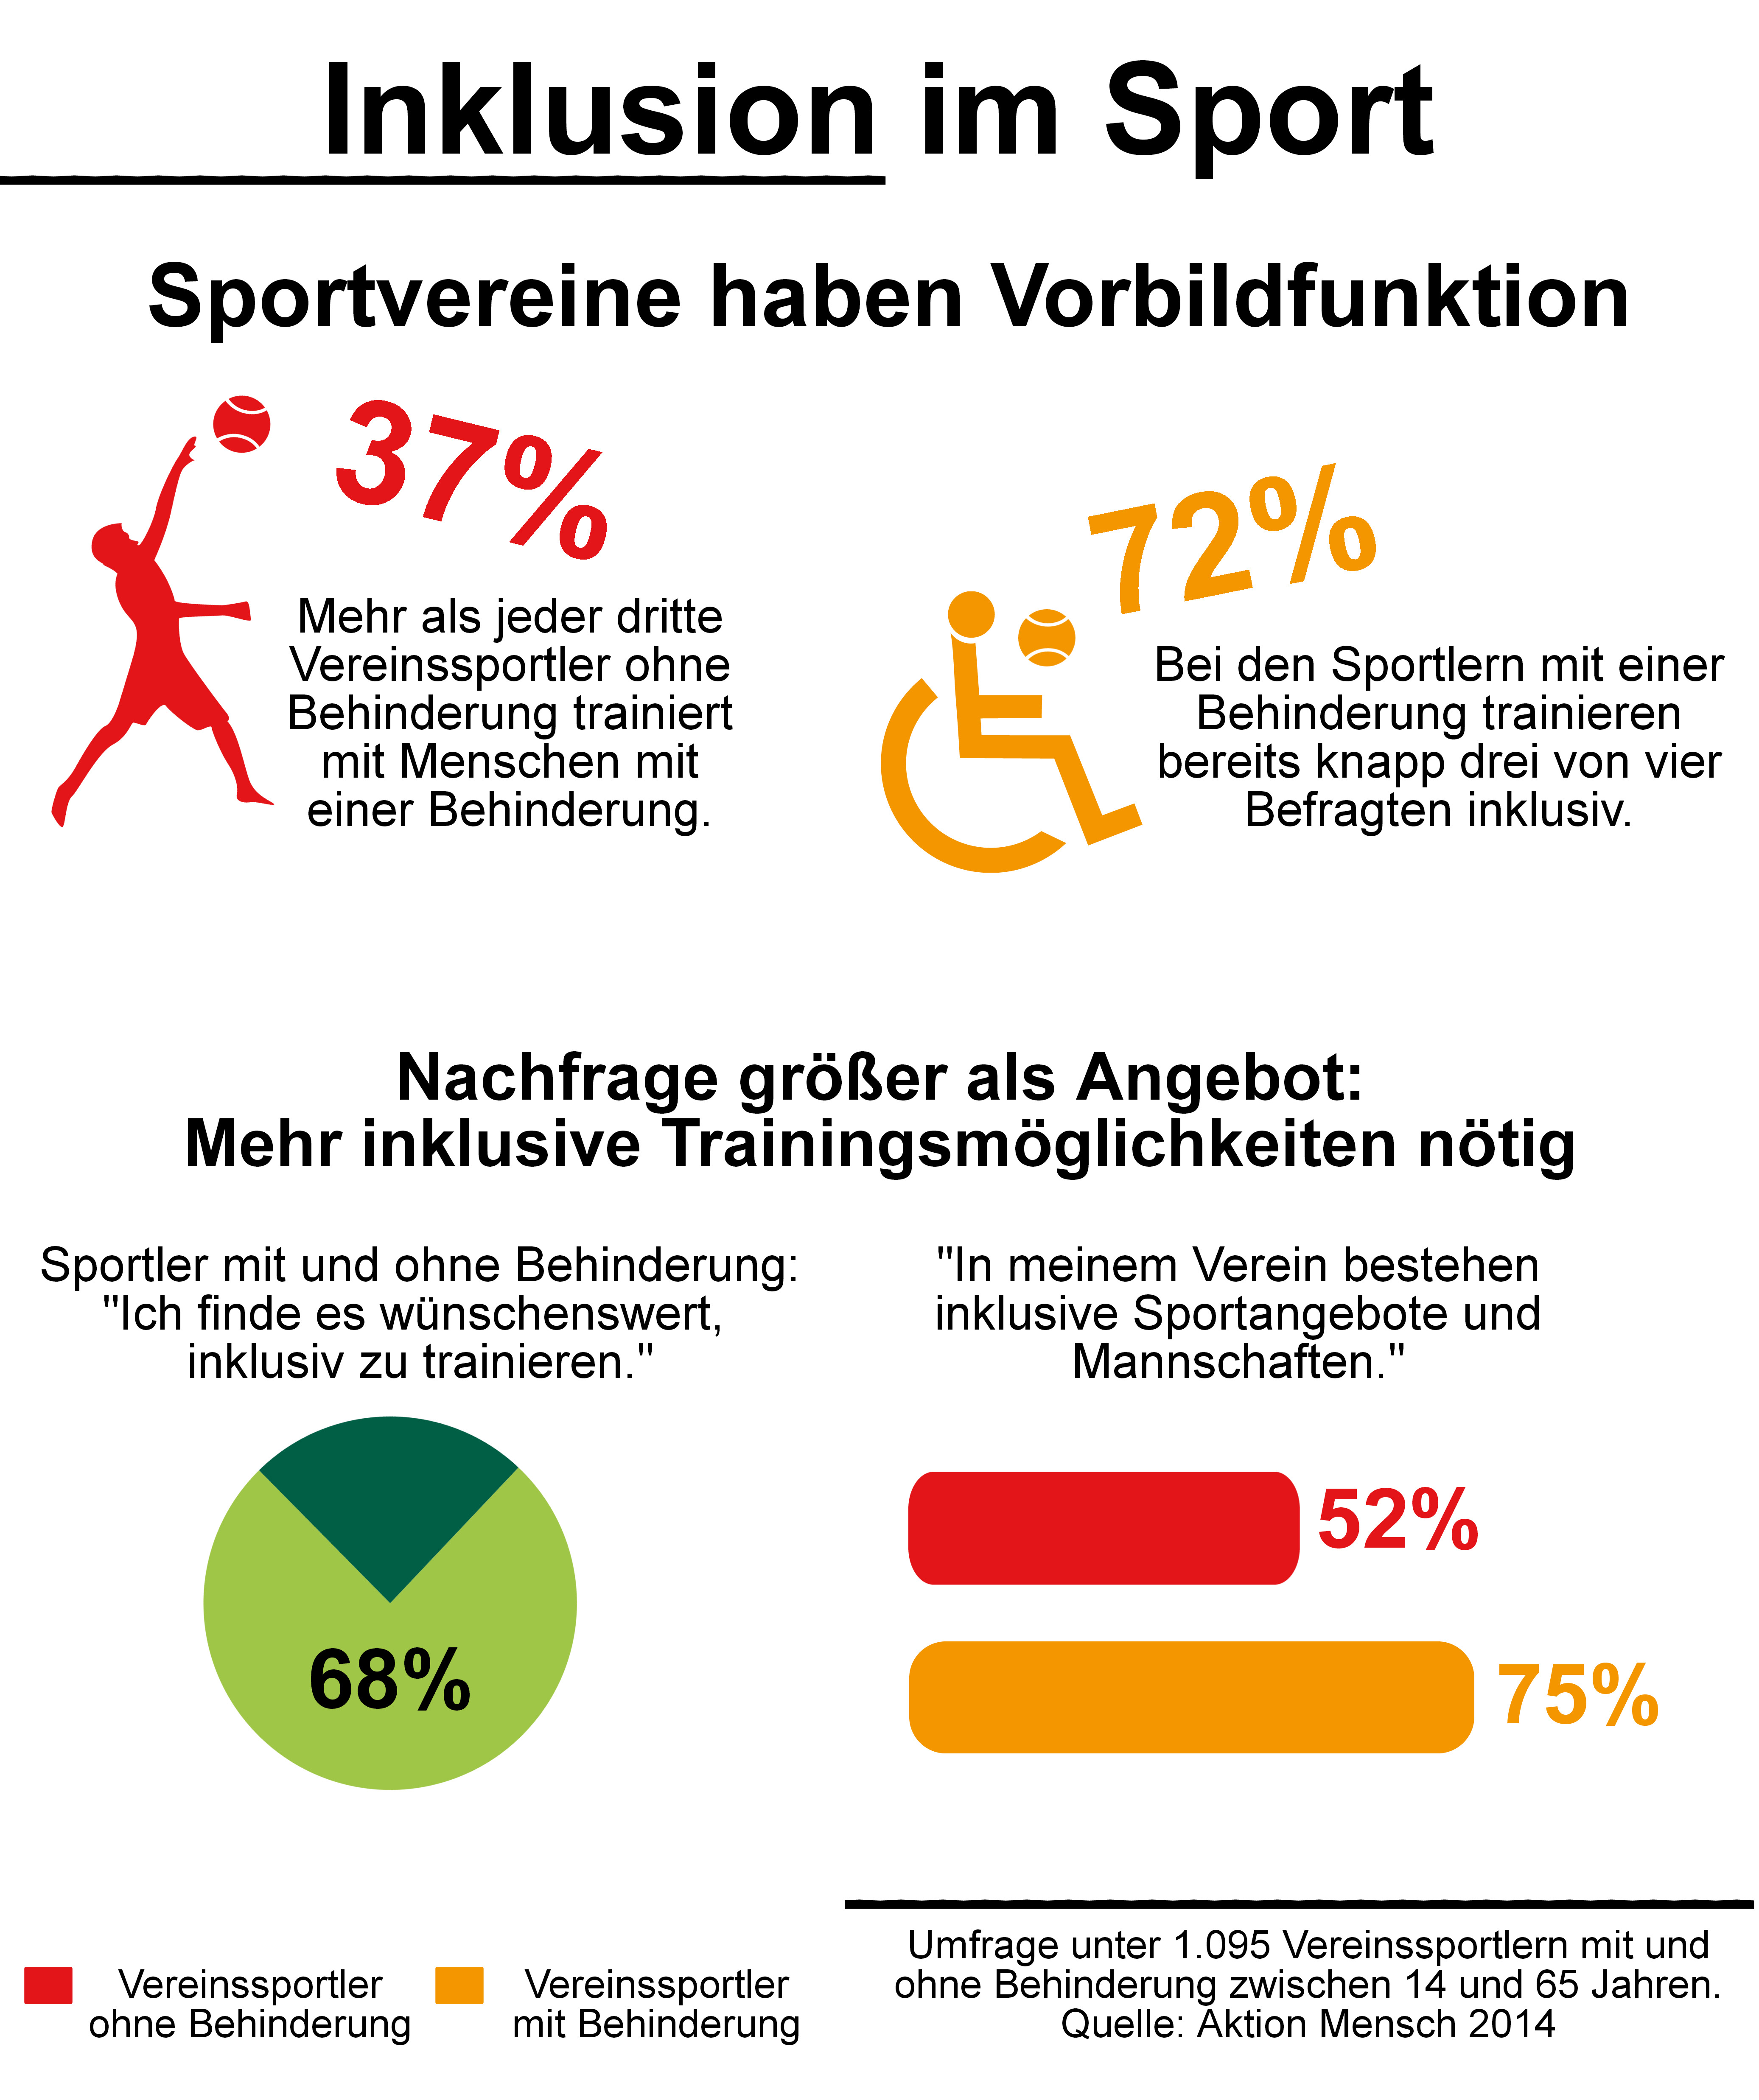 Sport hat Vorbildfunktion fr Inklusion / Aktion Mensch-Umfrage zu Paralympics: Jeder Dritte trainiert gemeinsam mit Menschen mit Behinderung